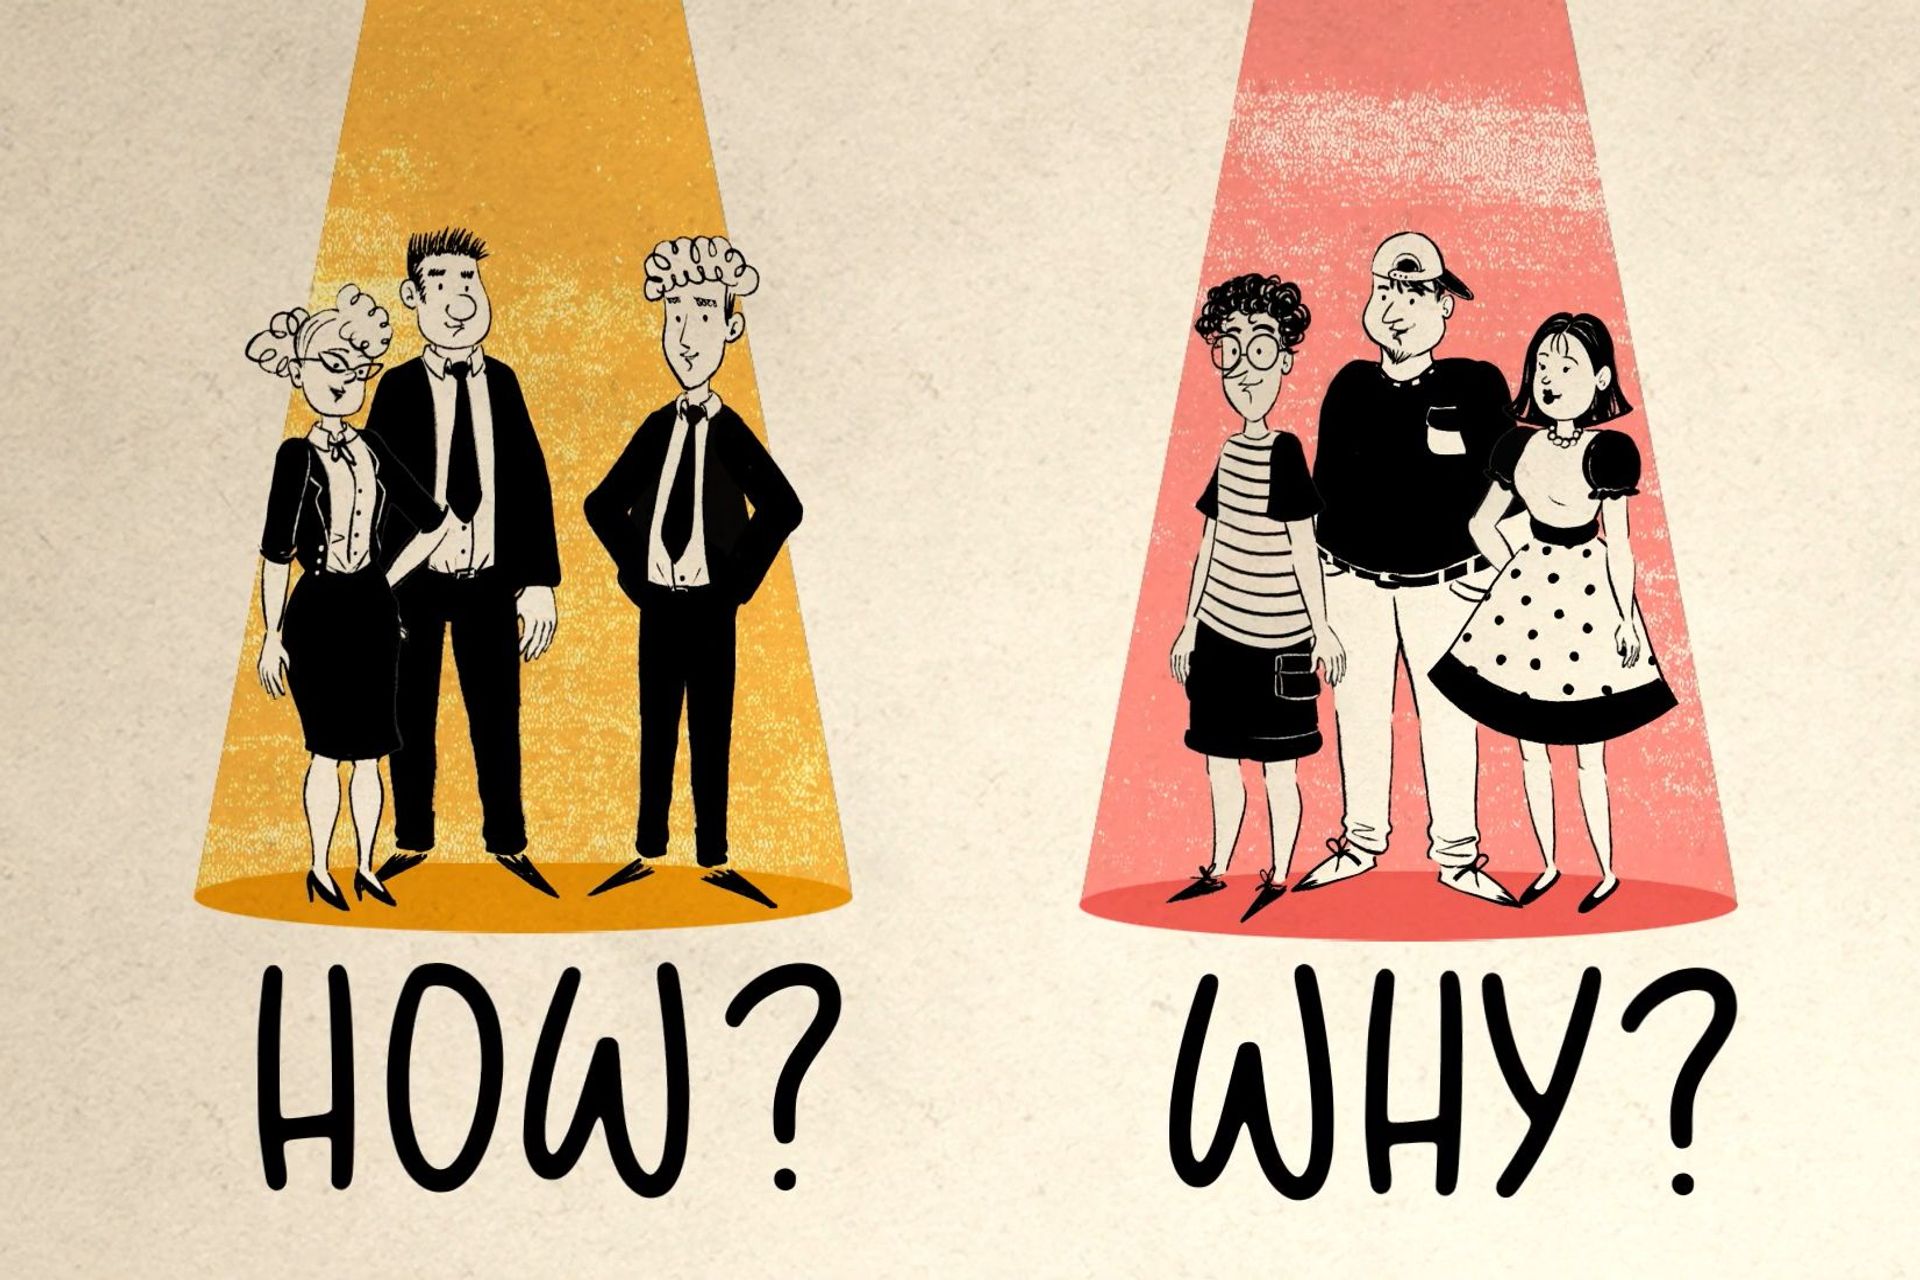 El dilema entre "How" i "Why" en anglès en relació a dos tipus diferents de públic